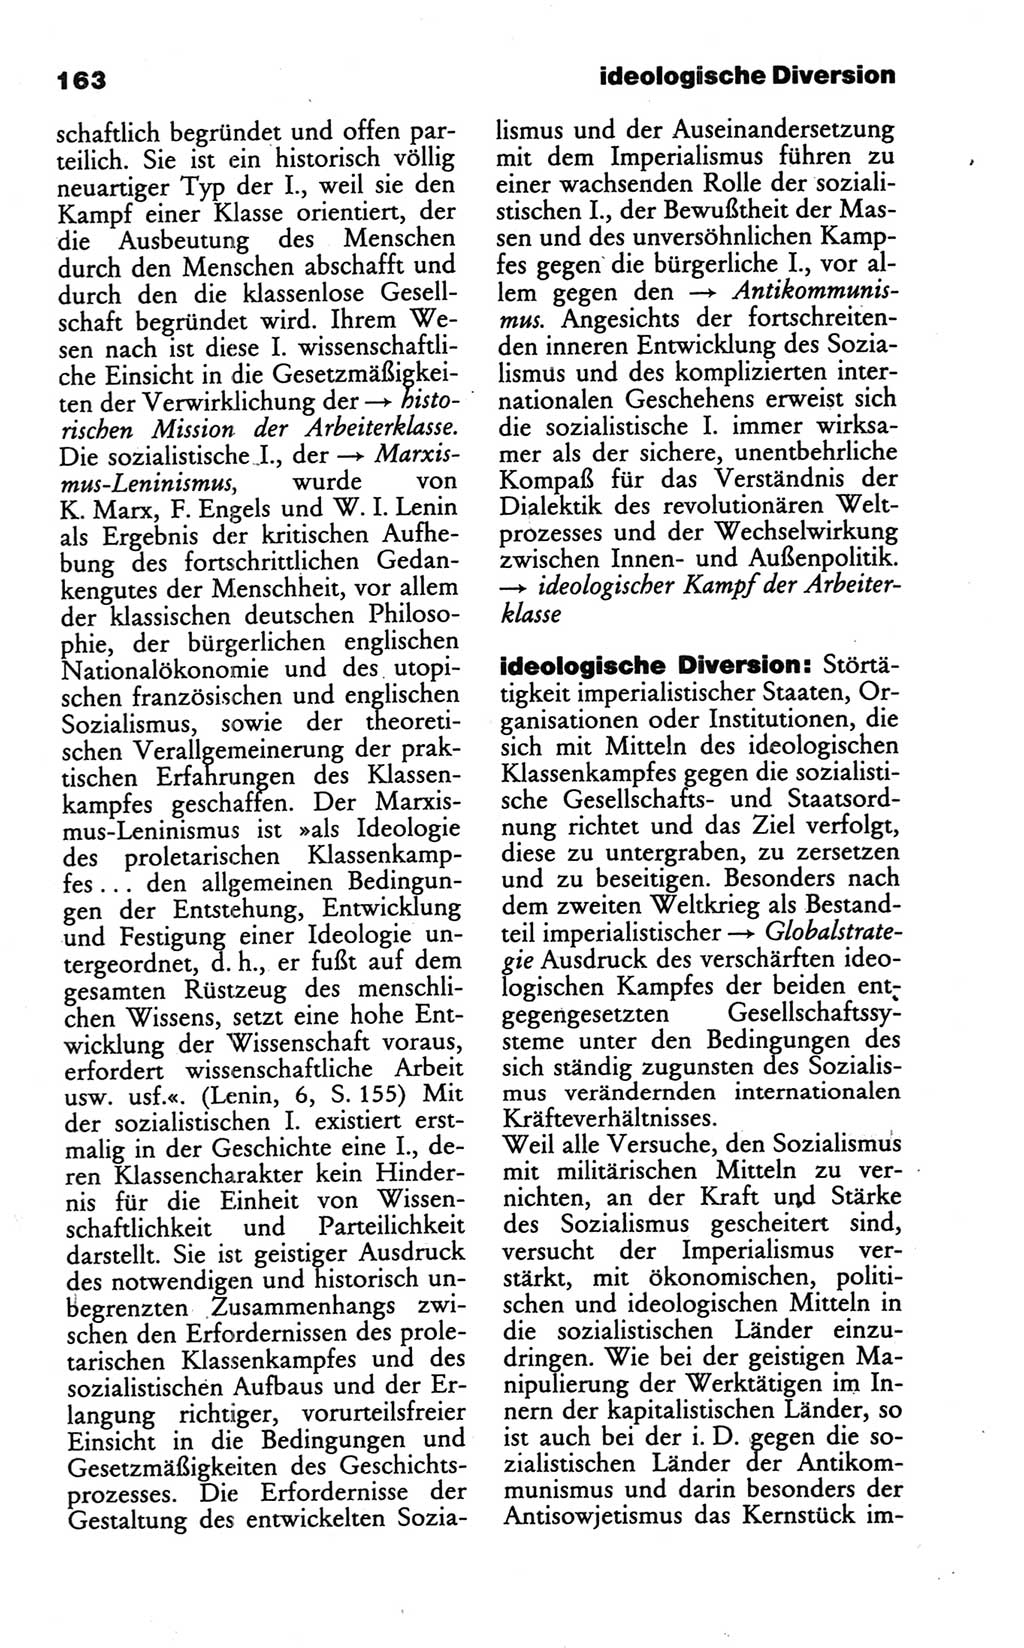 Wörterbuch des wissenschaftlichen Kommunismus [Deutsche Demokratische Republik (DDR)] 1986, Seite 163 (Wb. wiss. Komm. DDR 1986, S. 163)